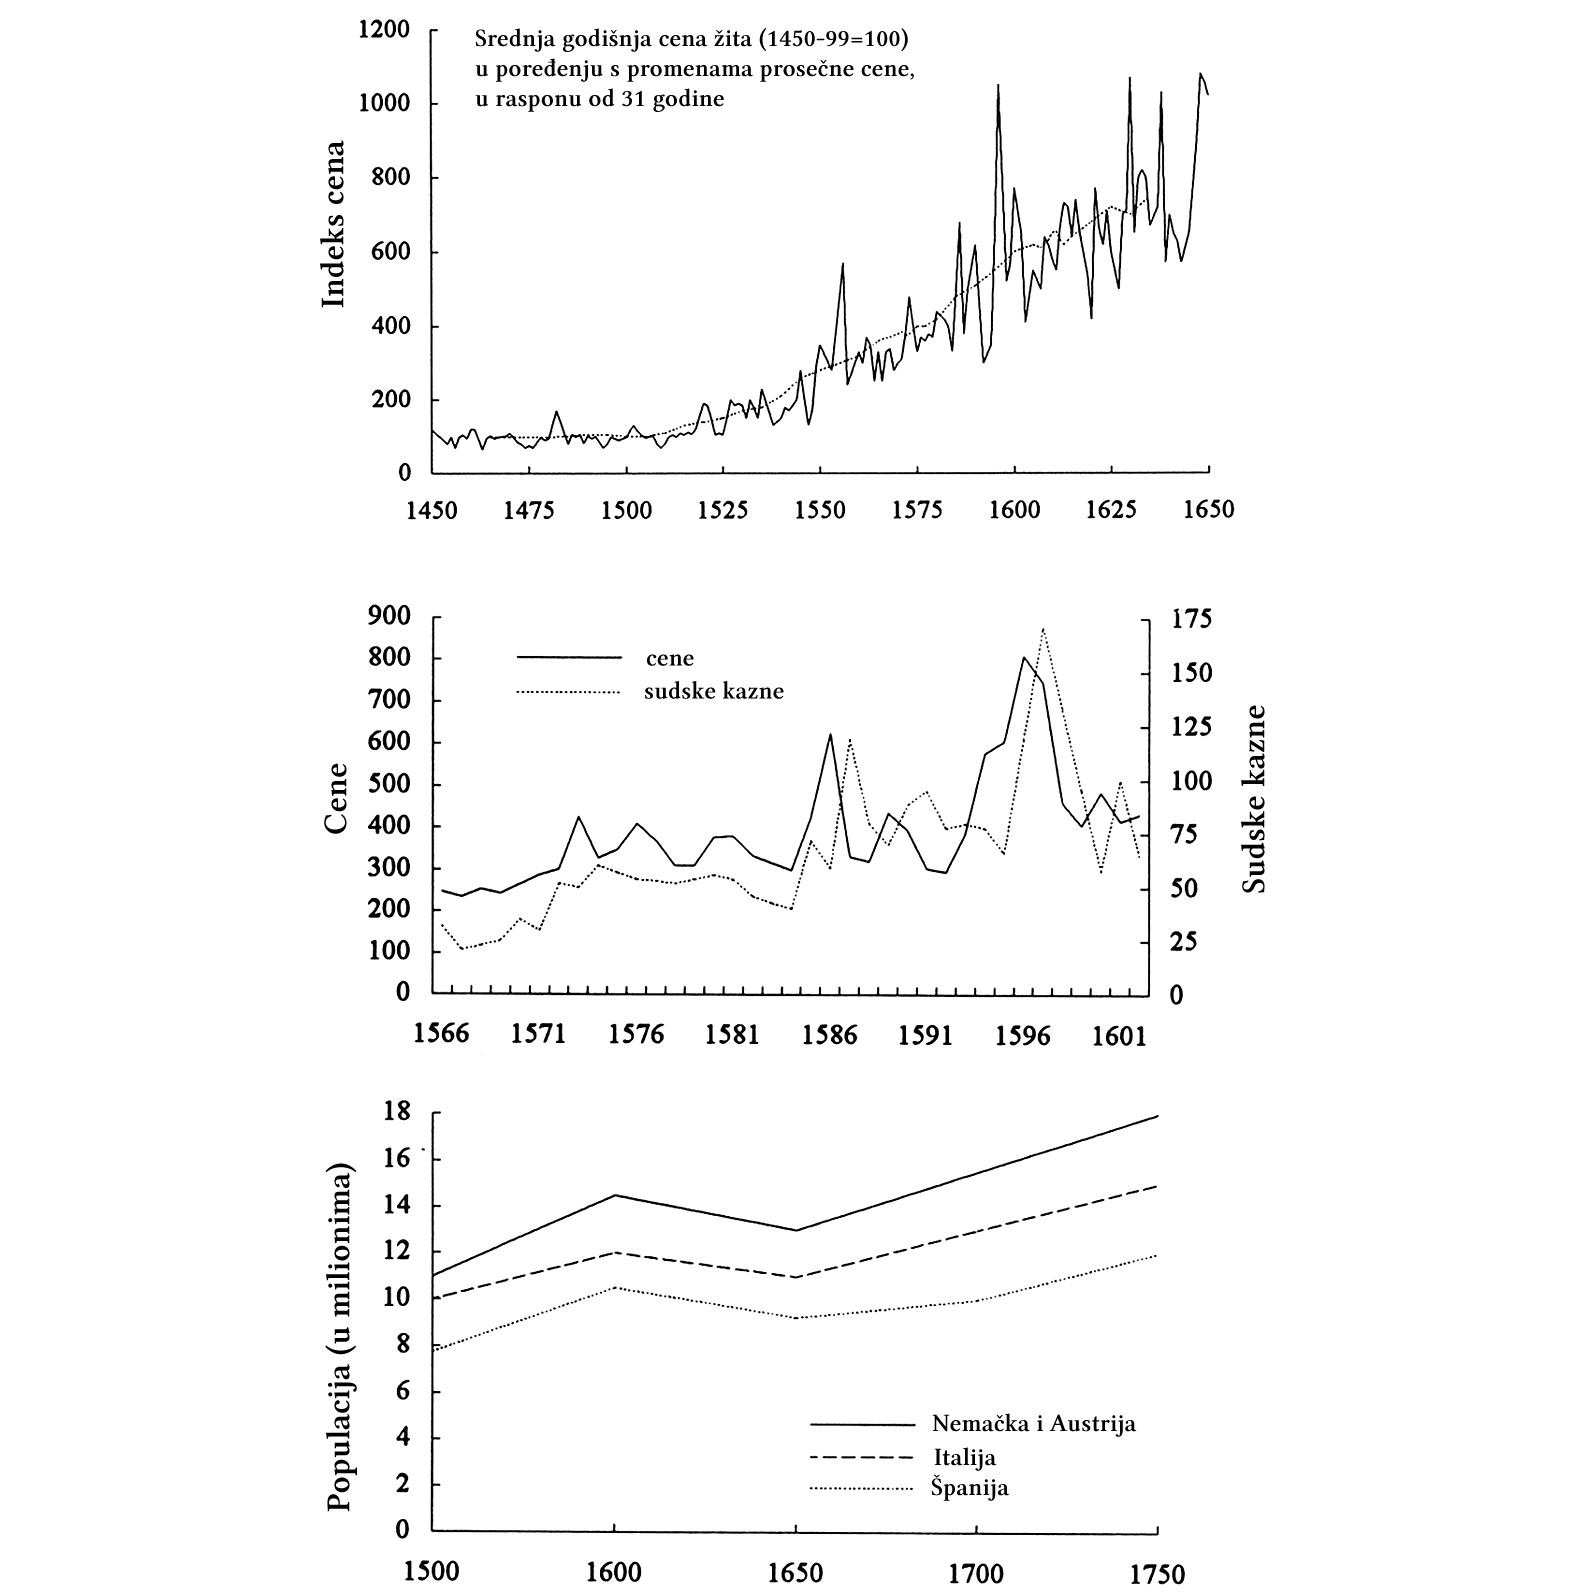 Ove tabele otkrivaju društvene posledice Revolucije cena. One prikazuju rast cene žita u Engleskoj između 1490. i 1650, zatim prateći rast drugih cena i zločina protiv vlasništva u Eseksu (Engleska), između 1566. i 1602. i konačno, pad populacije, izražen u milionima, u Nemačkoj, Austriji, Italiji i Španiji, između 1500. i 1750. (Hackett Fischer, 1996)